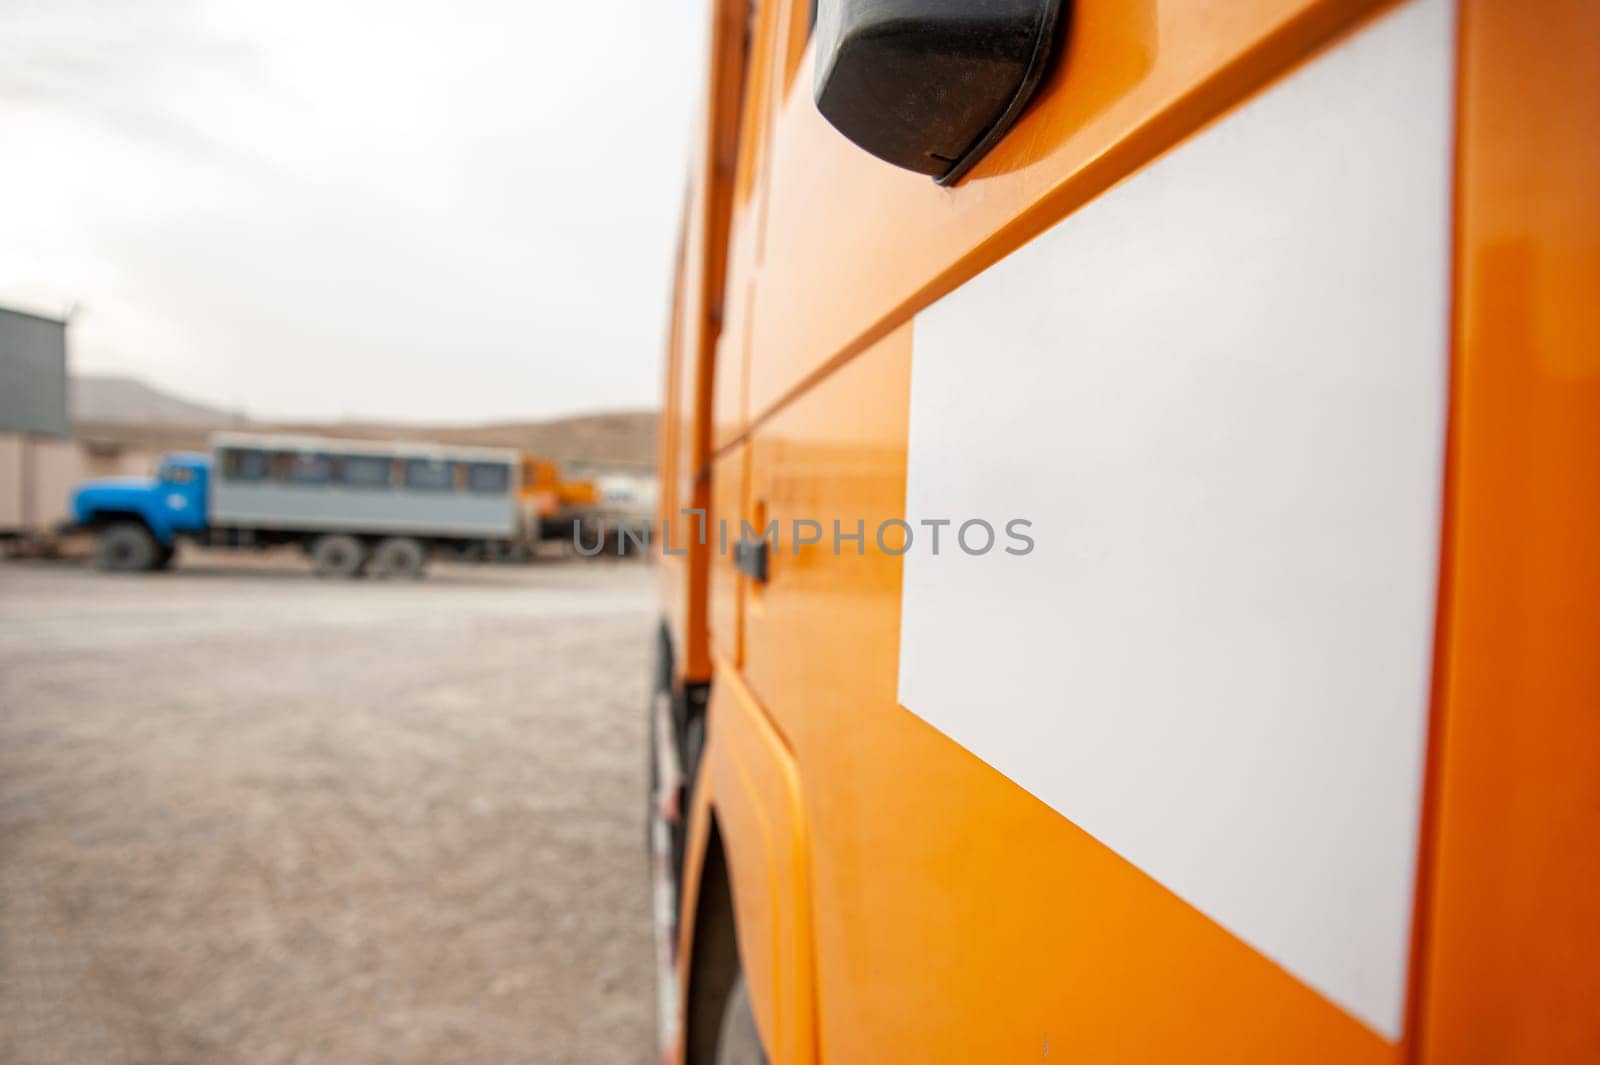 A closeup of an orange dump truck door at a construction site